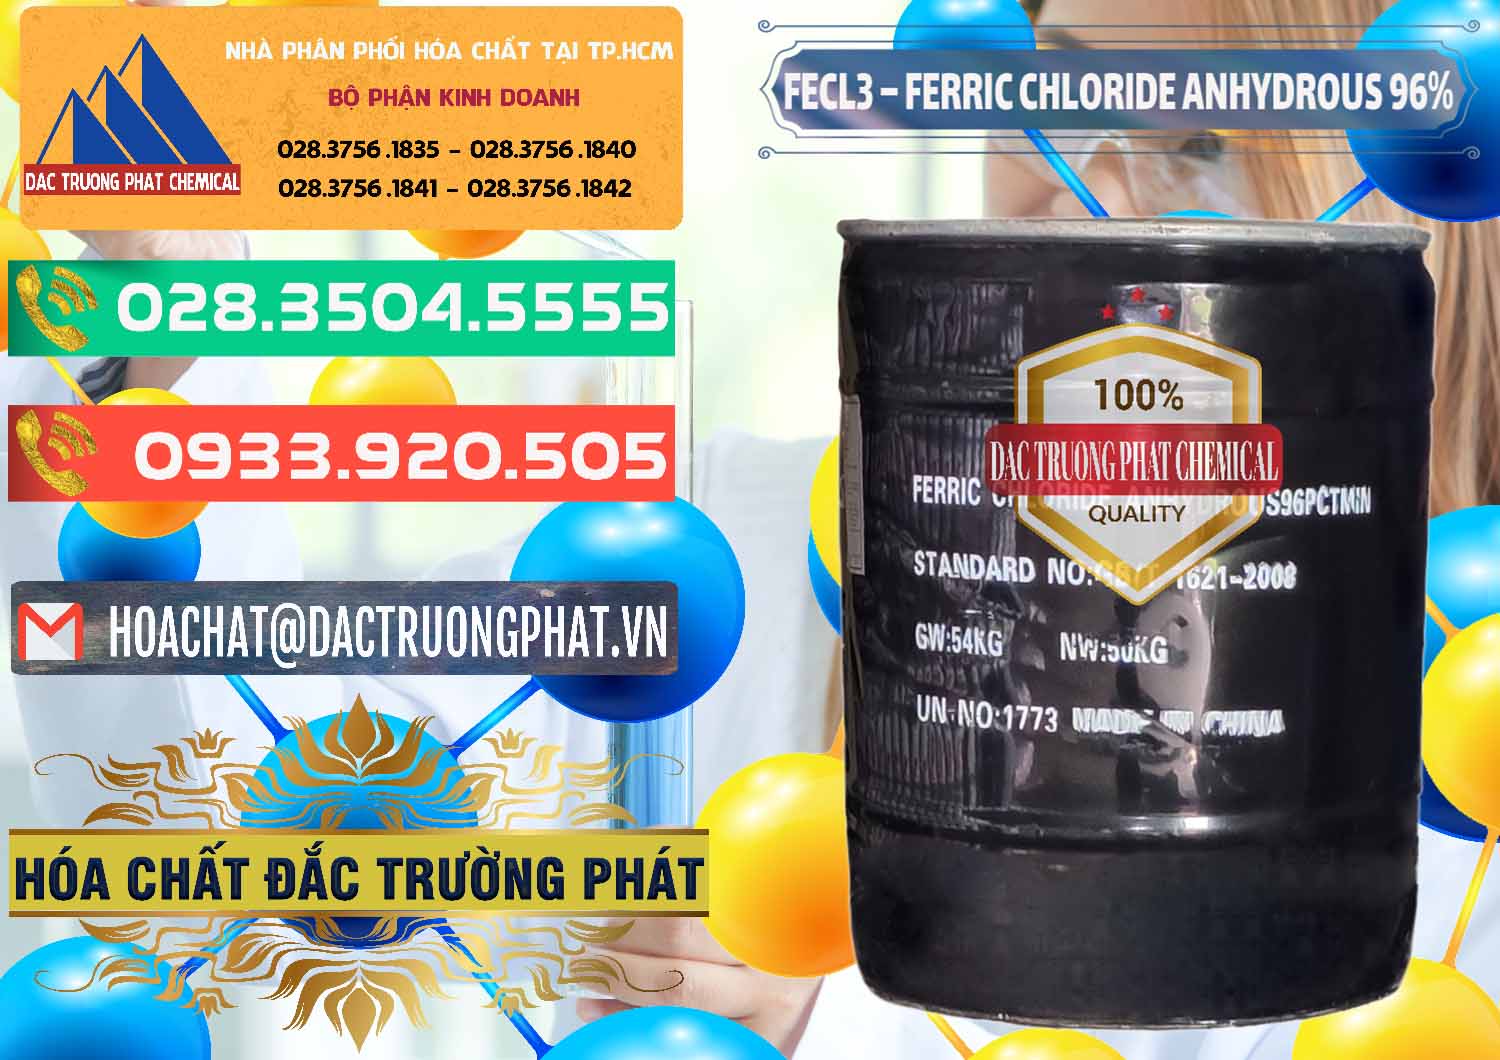 Nơi chuyên cung ứng & bán FECL3 – Ferric Chloride Anhydrous 96% Trung Quốc China - 0065 - Nhà phân phối & cung cấp hóa chất tại TP.HCM - congtyhoachat.com.vn